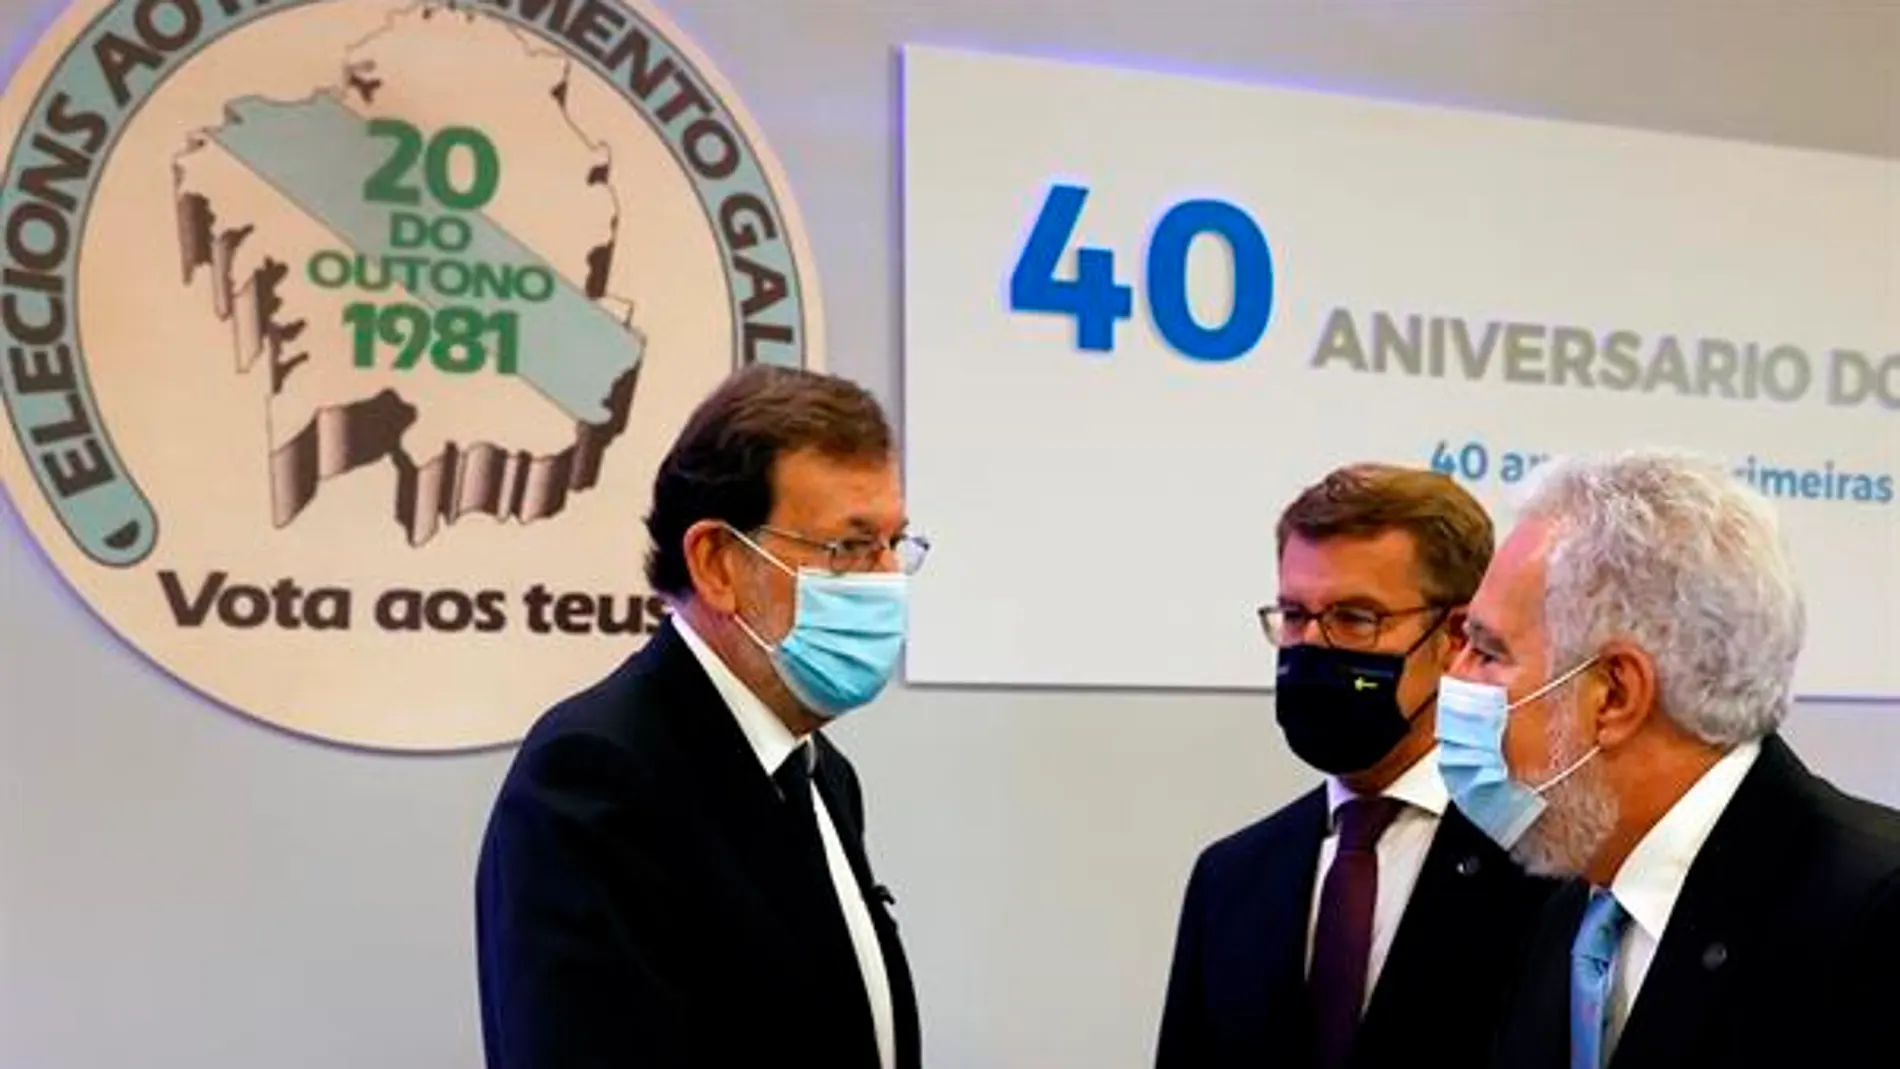 Rajoy pide que se plasme la verdad y se pida perdón a las víctimas de ETA, en el décimo aniversario del fin de su actividad armada